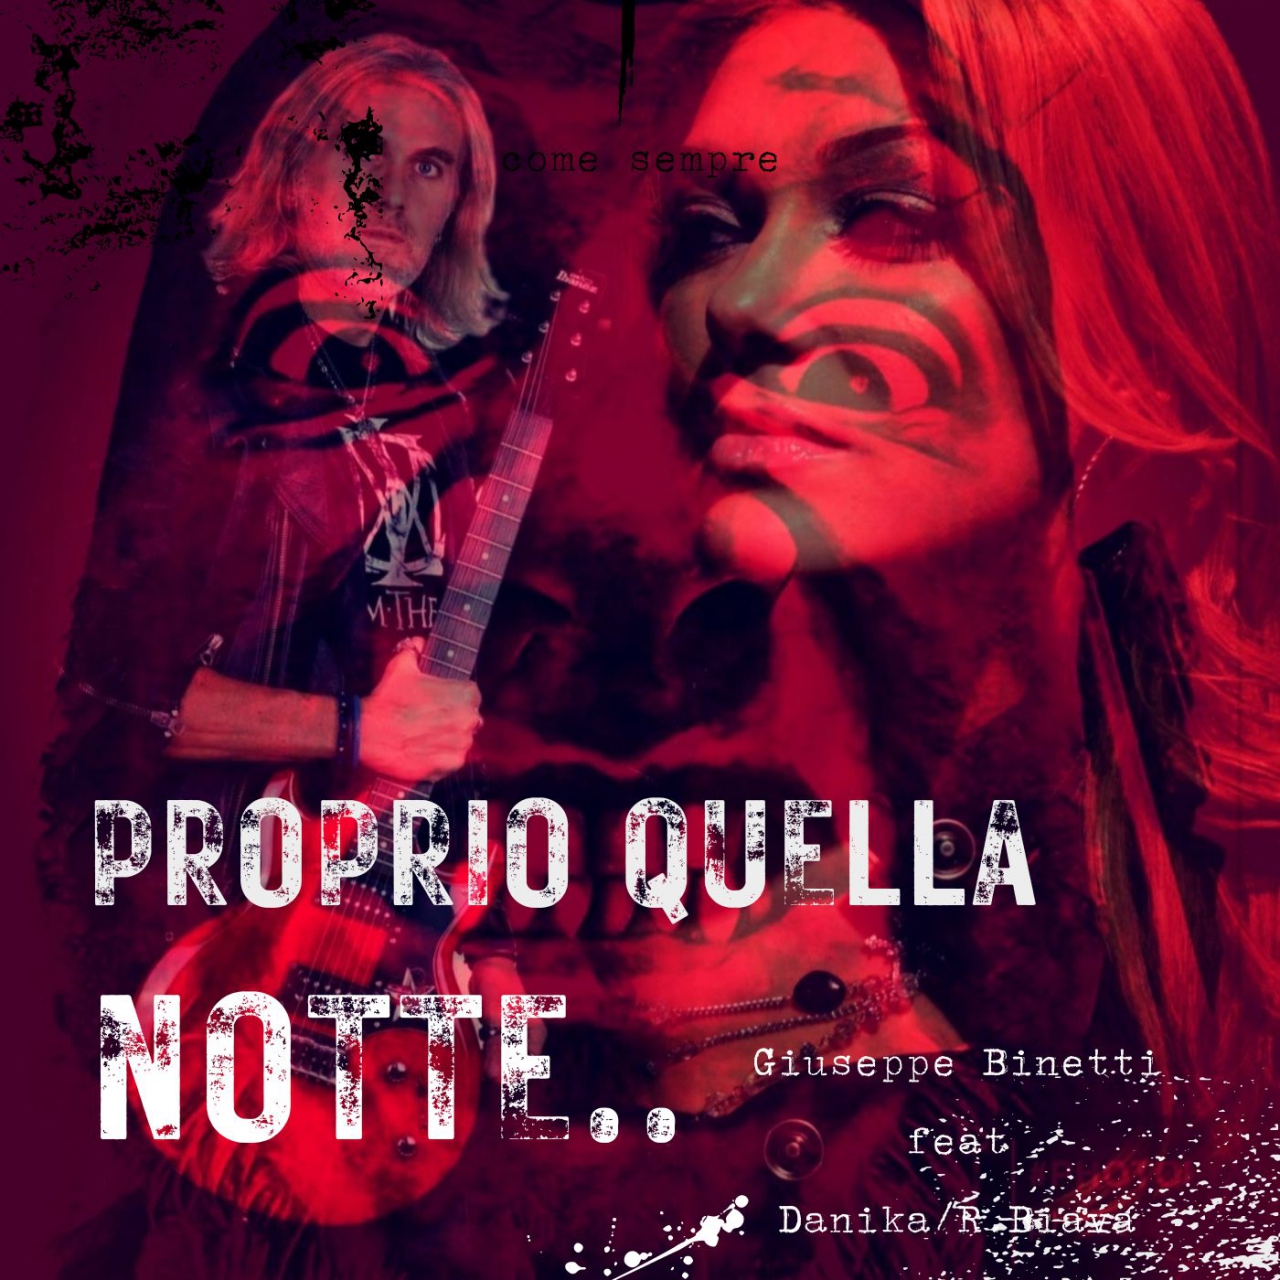 Giuseppe Binetti feat. Danika - “Proprio quella notte”